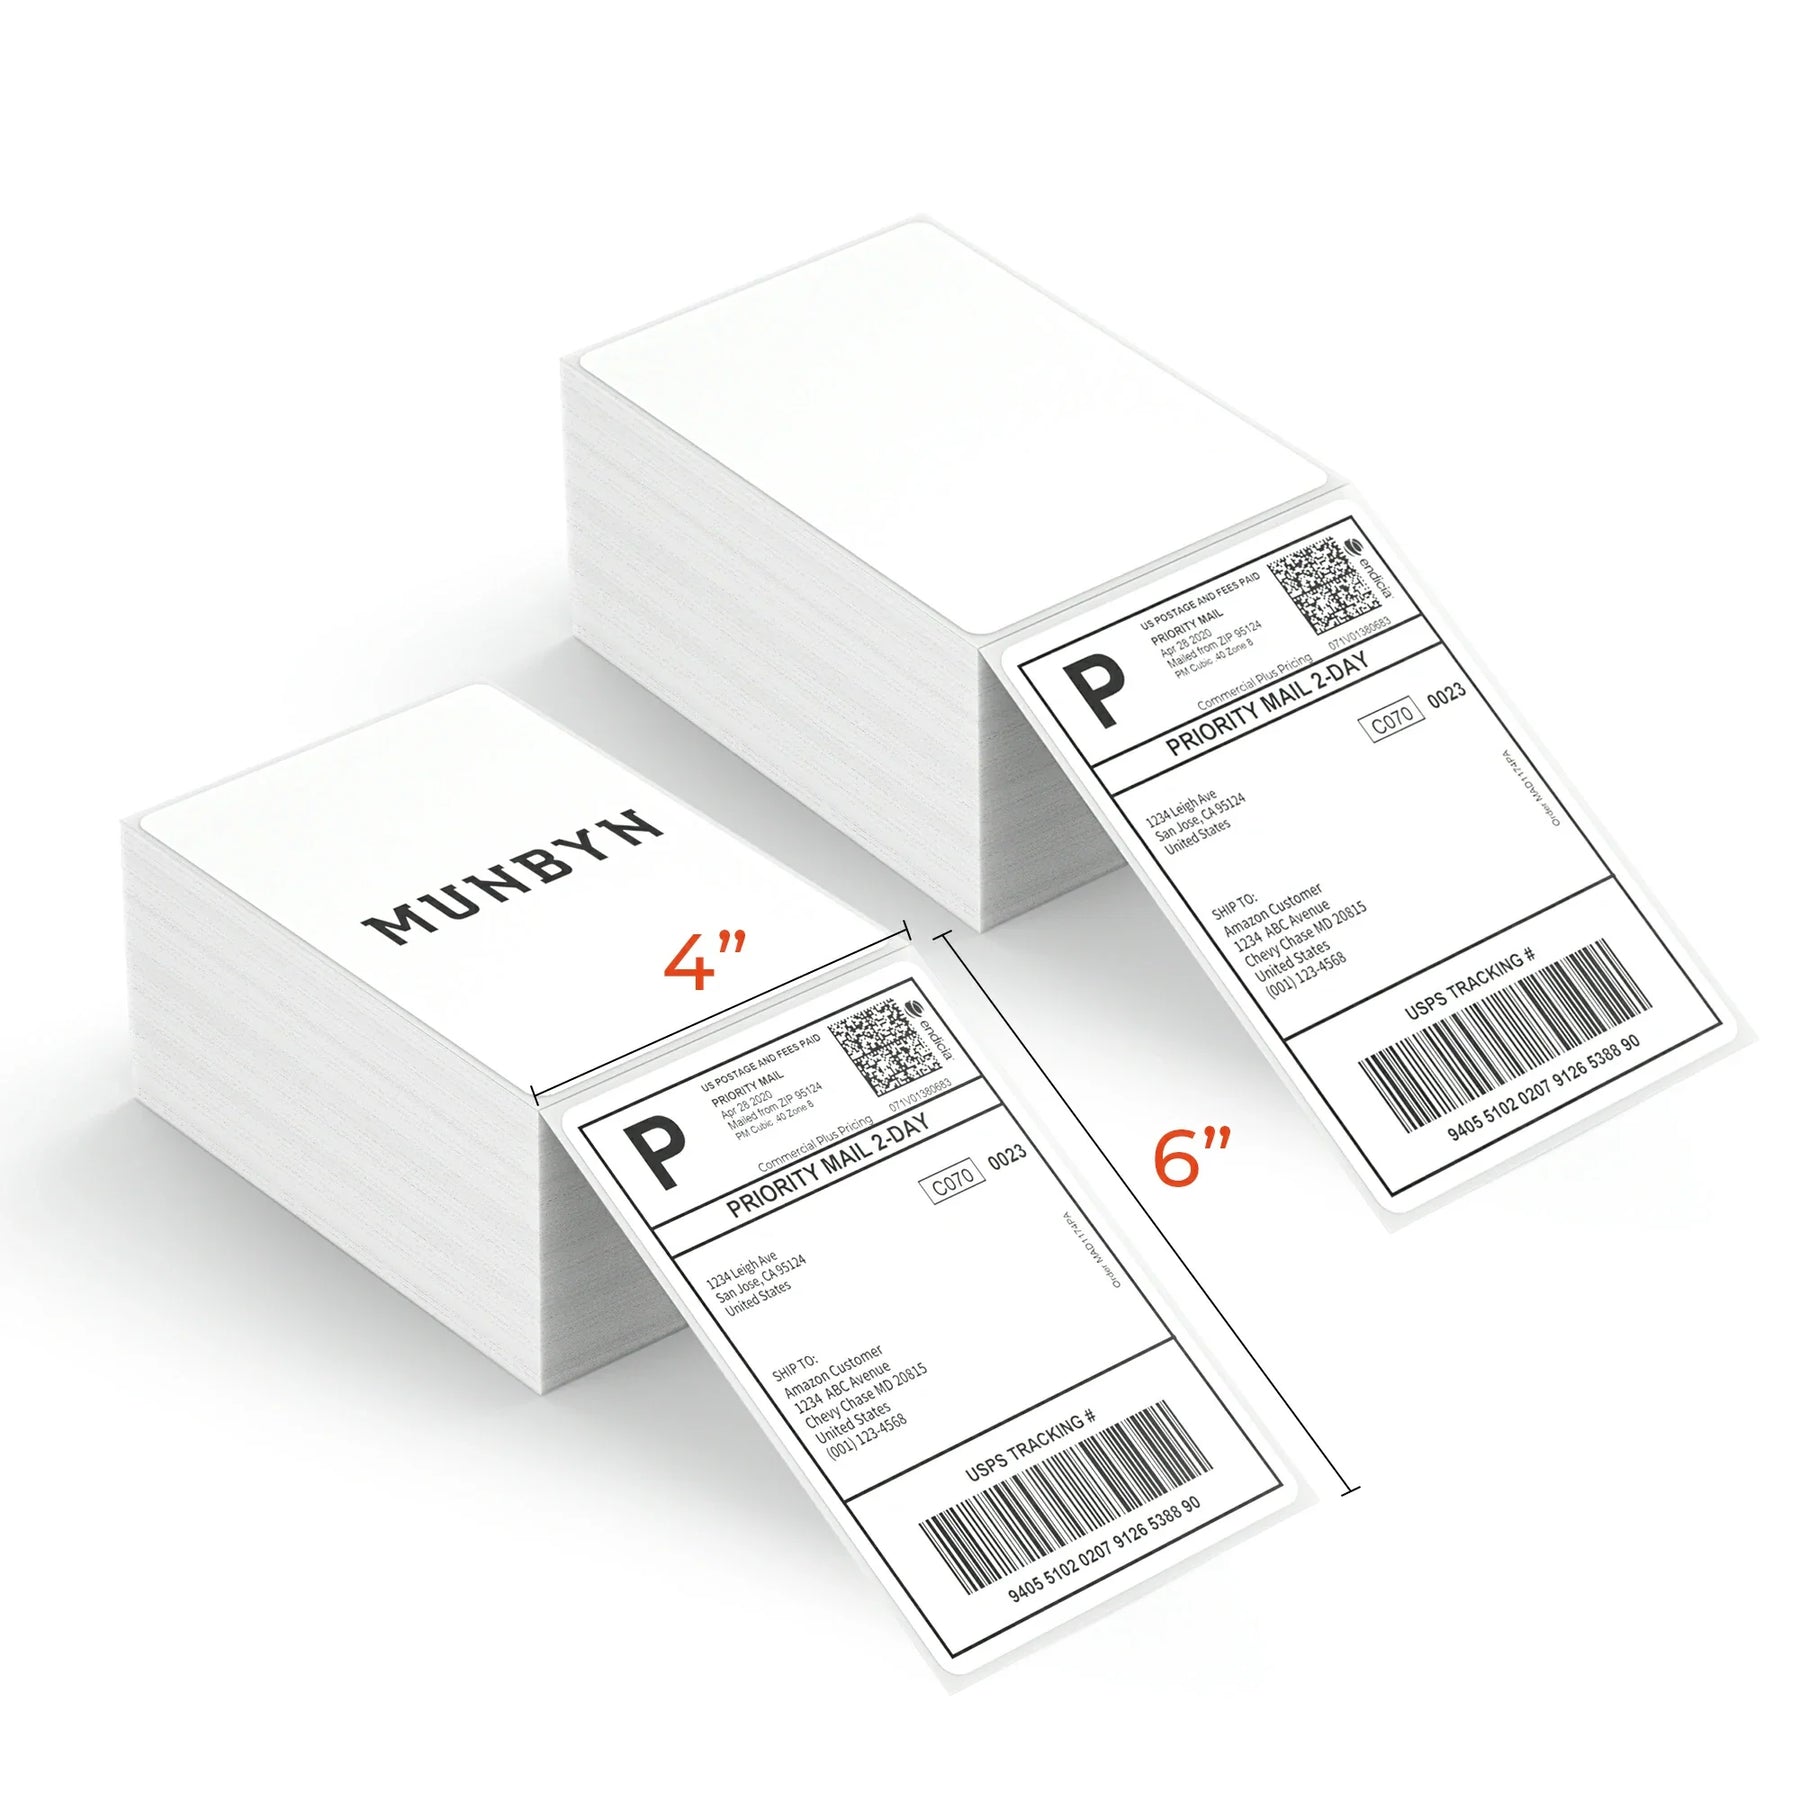 MUNBYN-Thermoversandetiketten werden auf Rollen mit jeweils 500 Etiketten geliefert und haben eine Größe von 100 mm x 150 mm. 